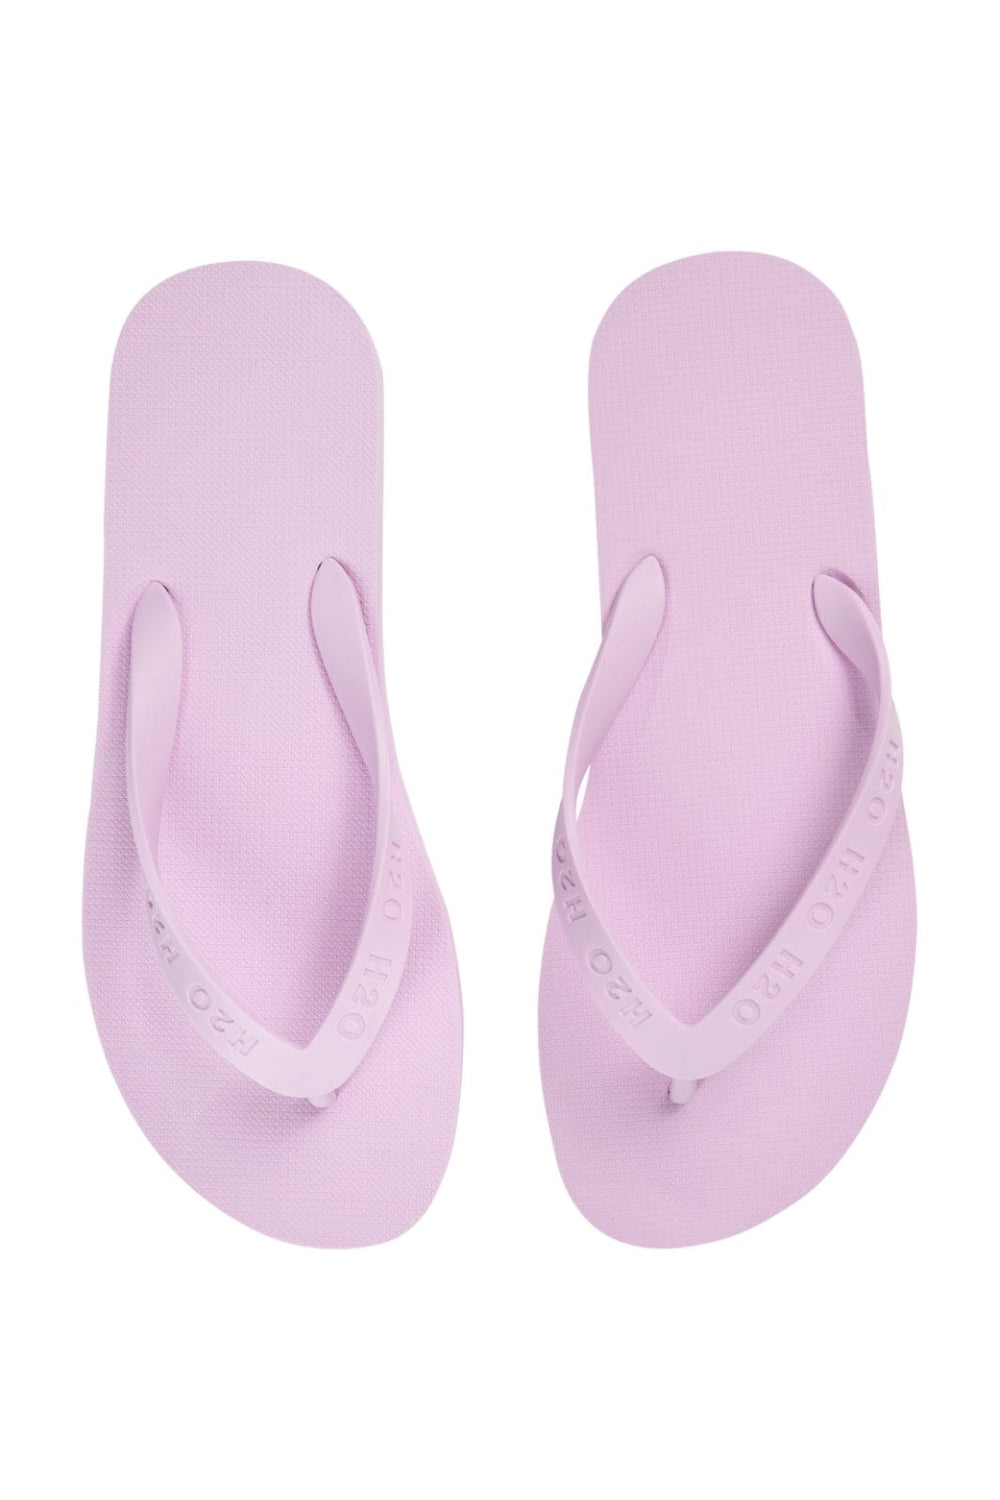 H2O - Flip Flop - 2015 Light Pink Sandaler 